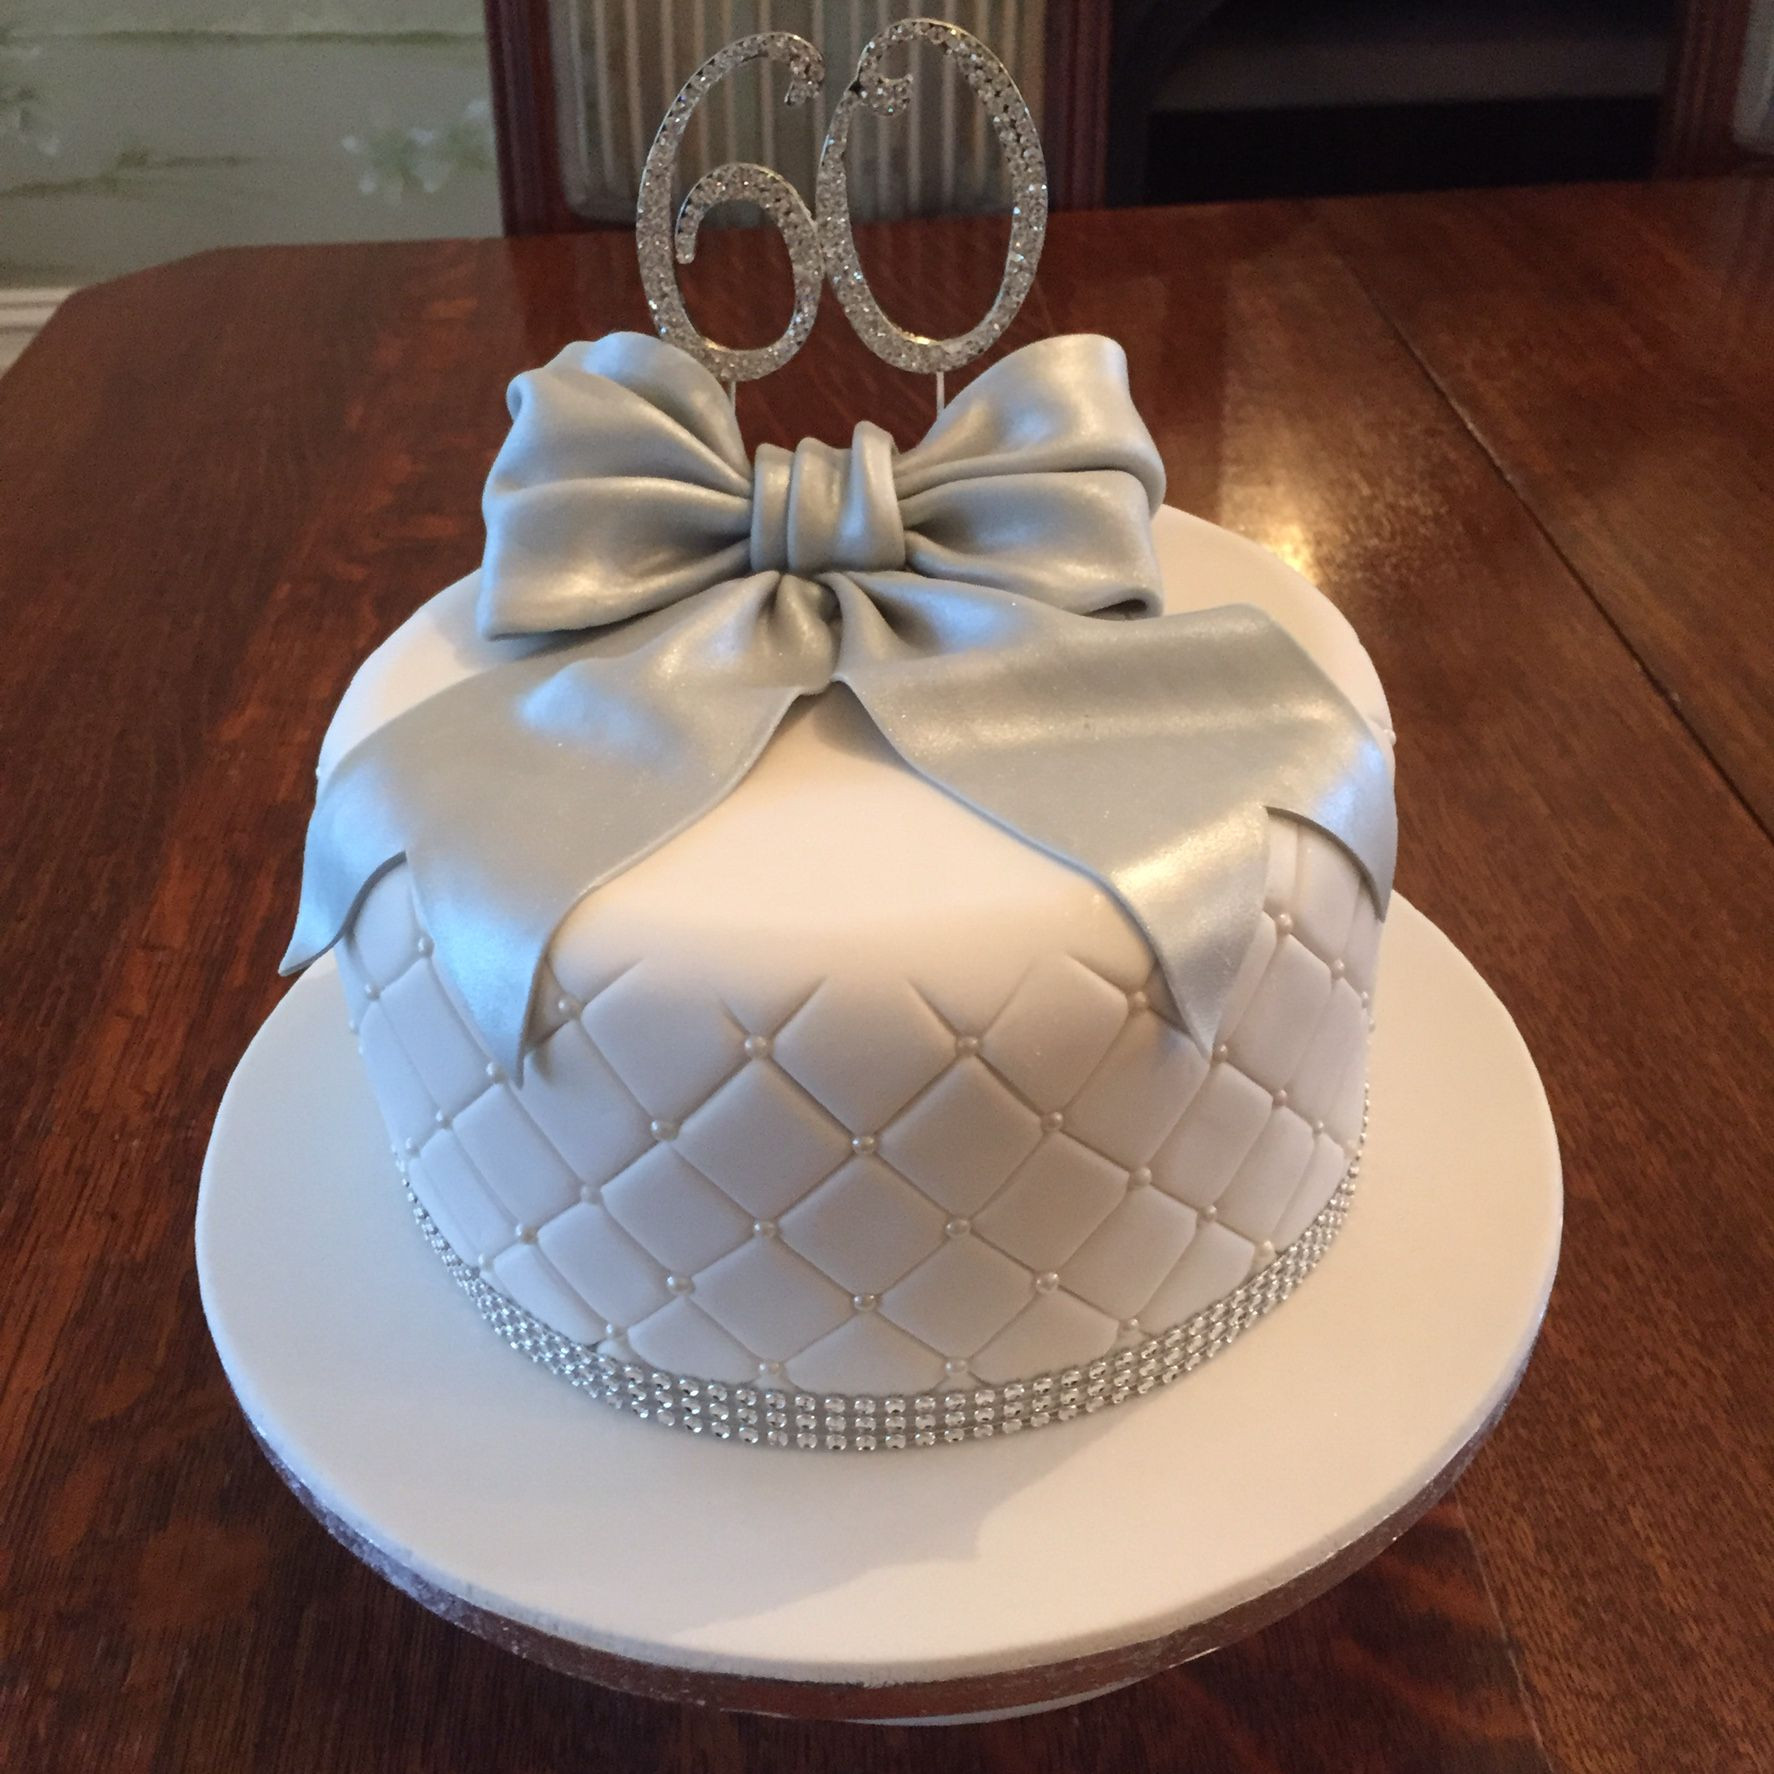 60th Wedding Anniversary Cake
 60th Wedding Anniversary Cake in 2019